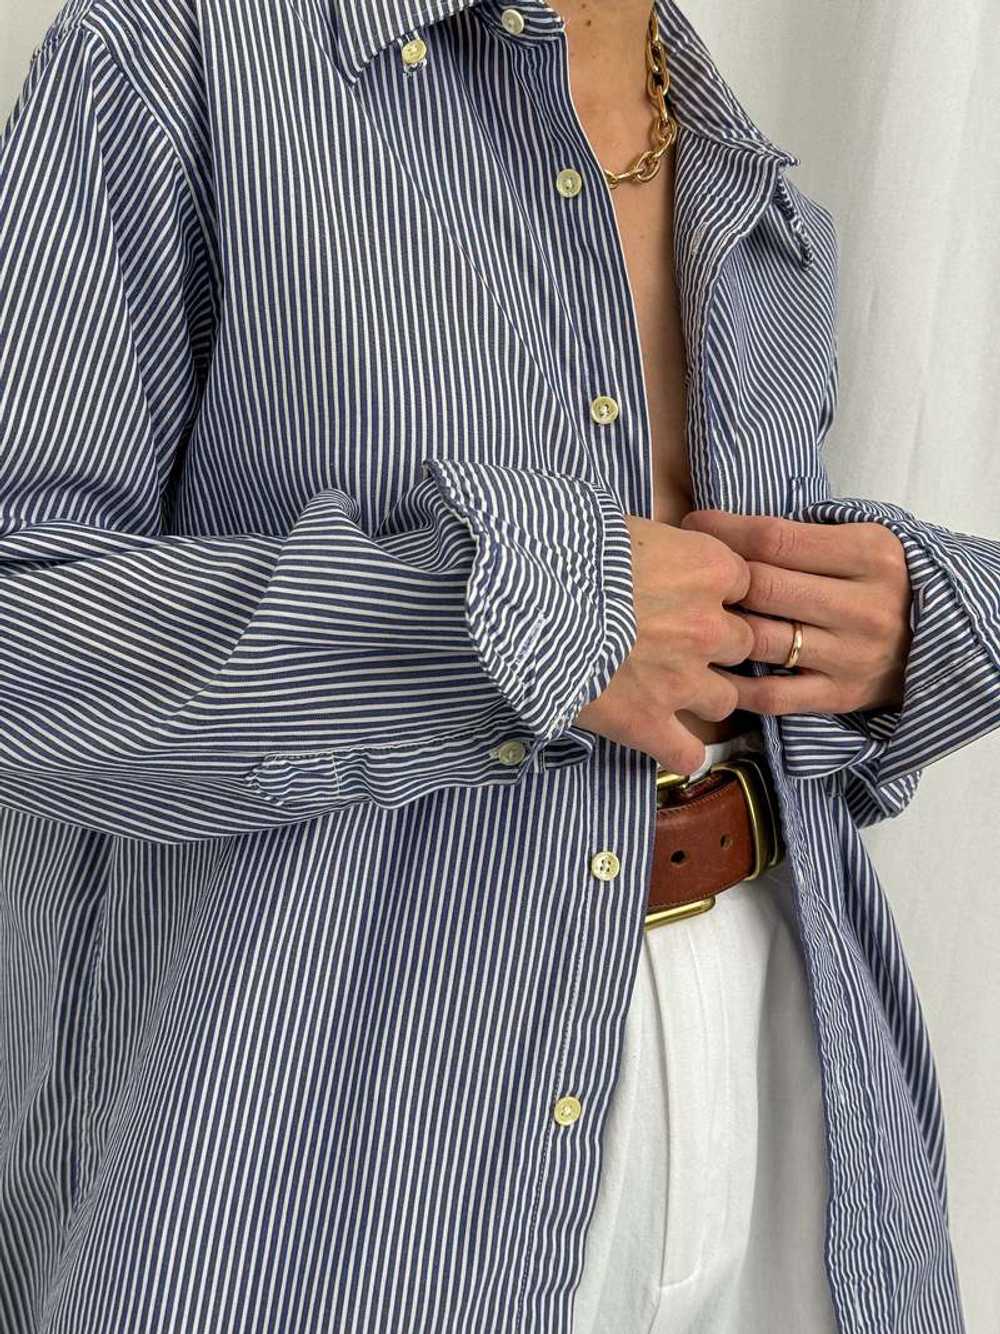 Vintage Button Down Shirt - Bleu/Blanc Striped - image 2